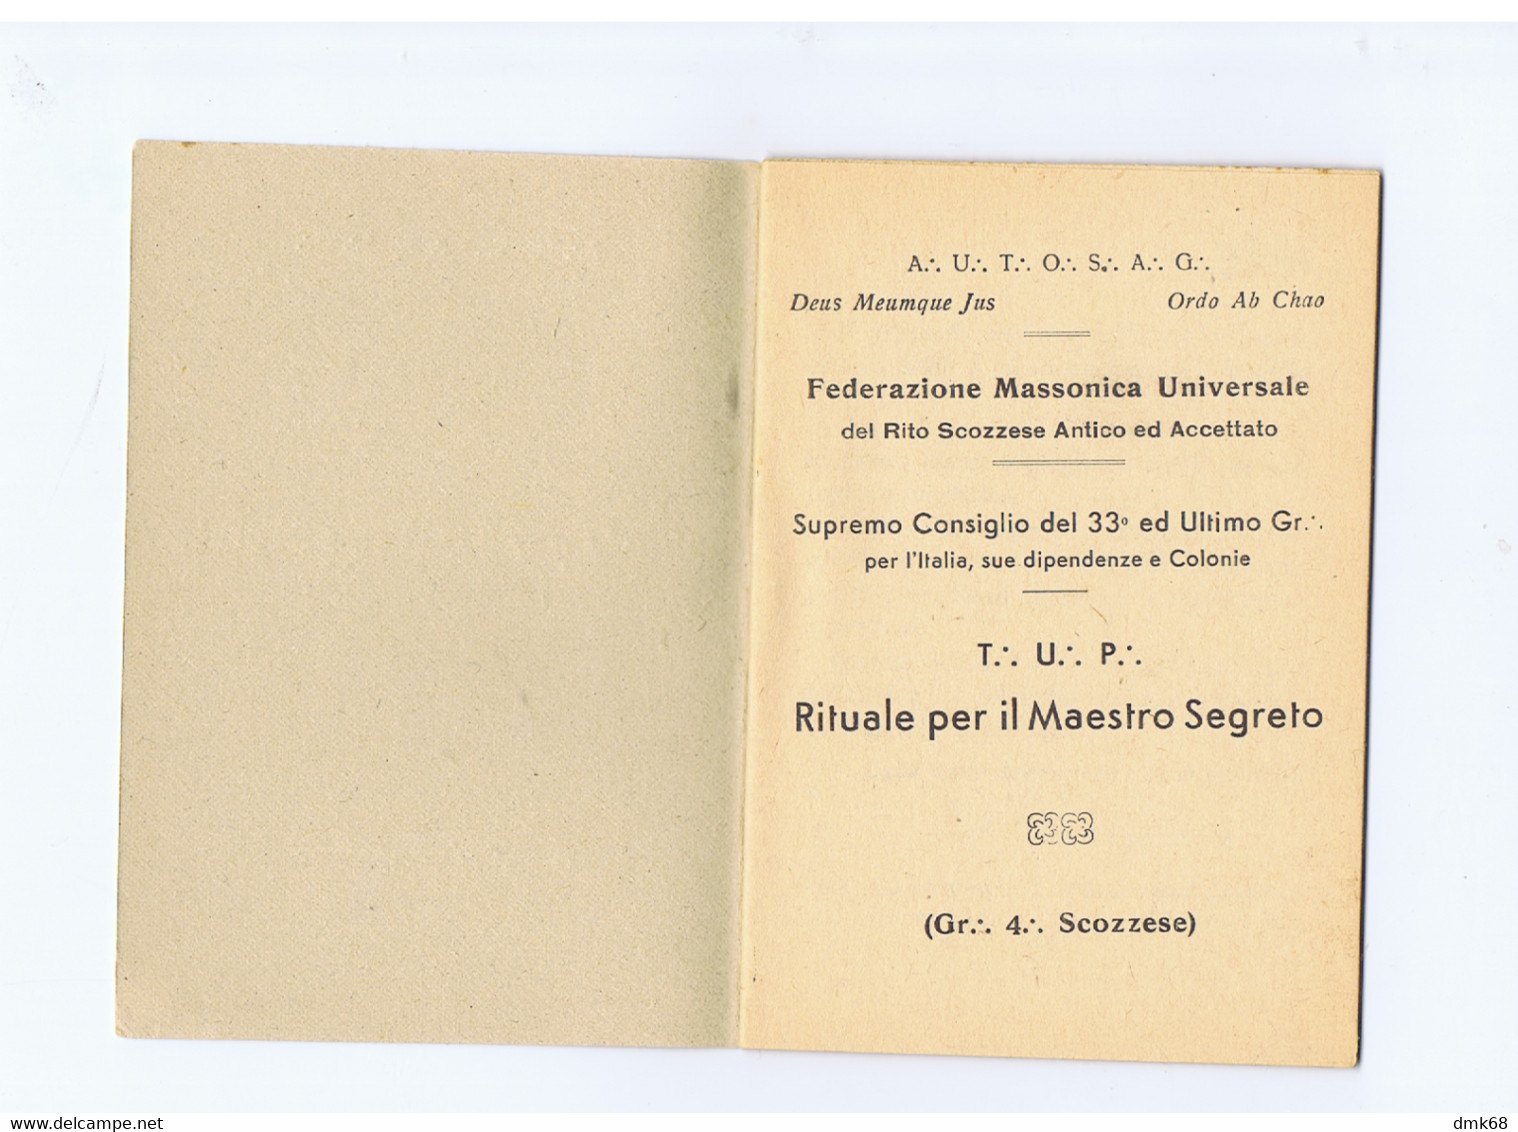 MASSONERIA / Masonry - RITUALE PER IL MAESTRO SEGRETO - LIBRETTO - 1940s (10302) - Société, Politique, économie